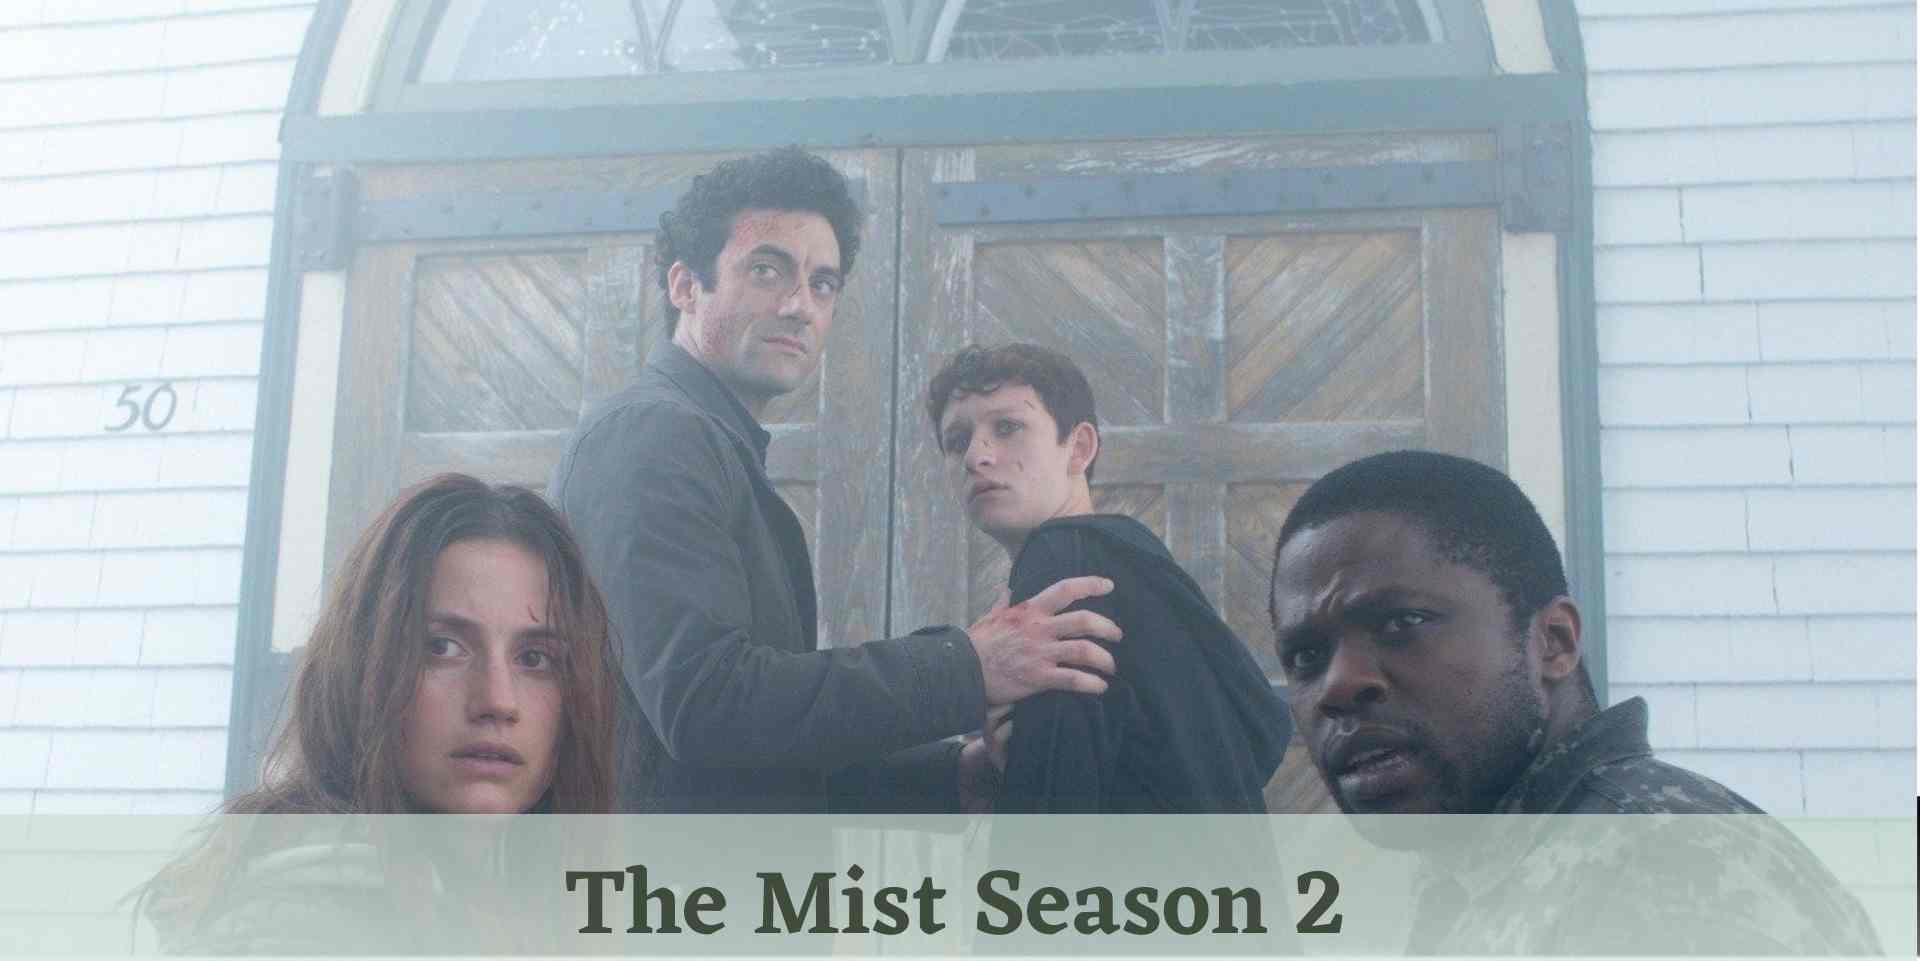 The Mist Season 2